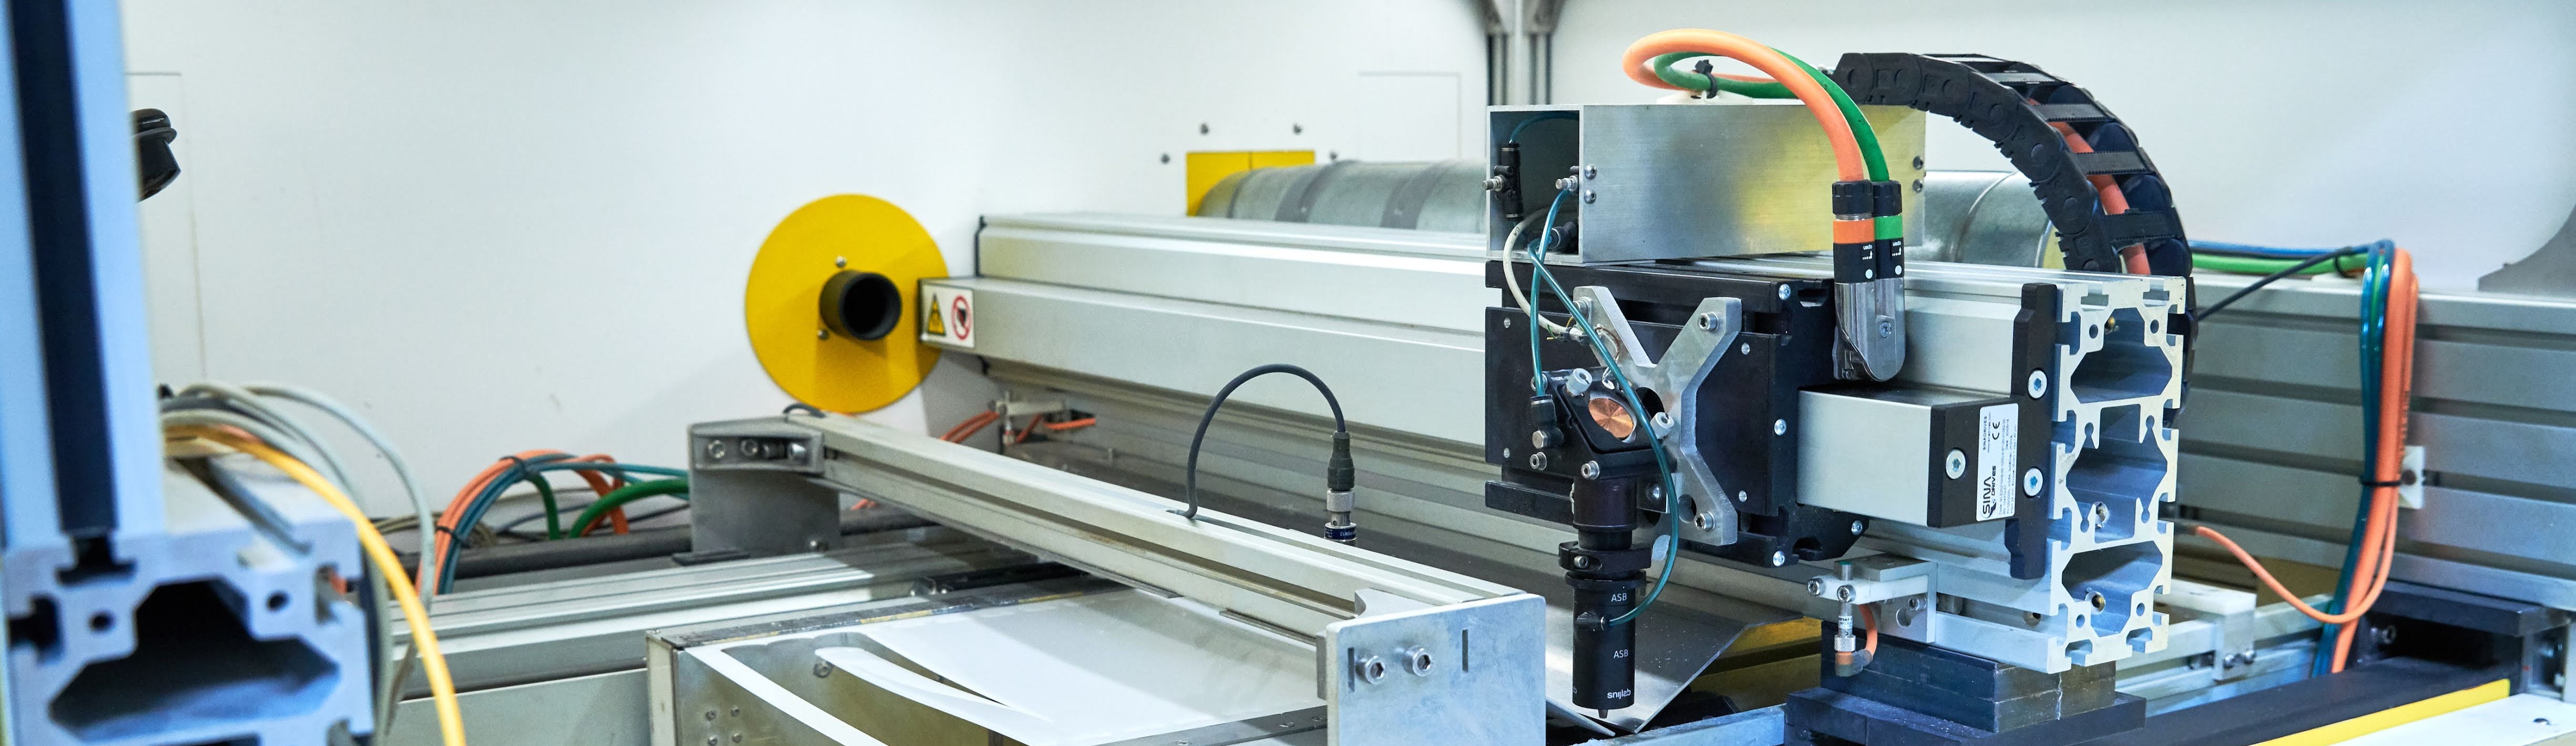 Moving laser cutting head in a laser cutting machine